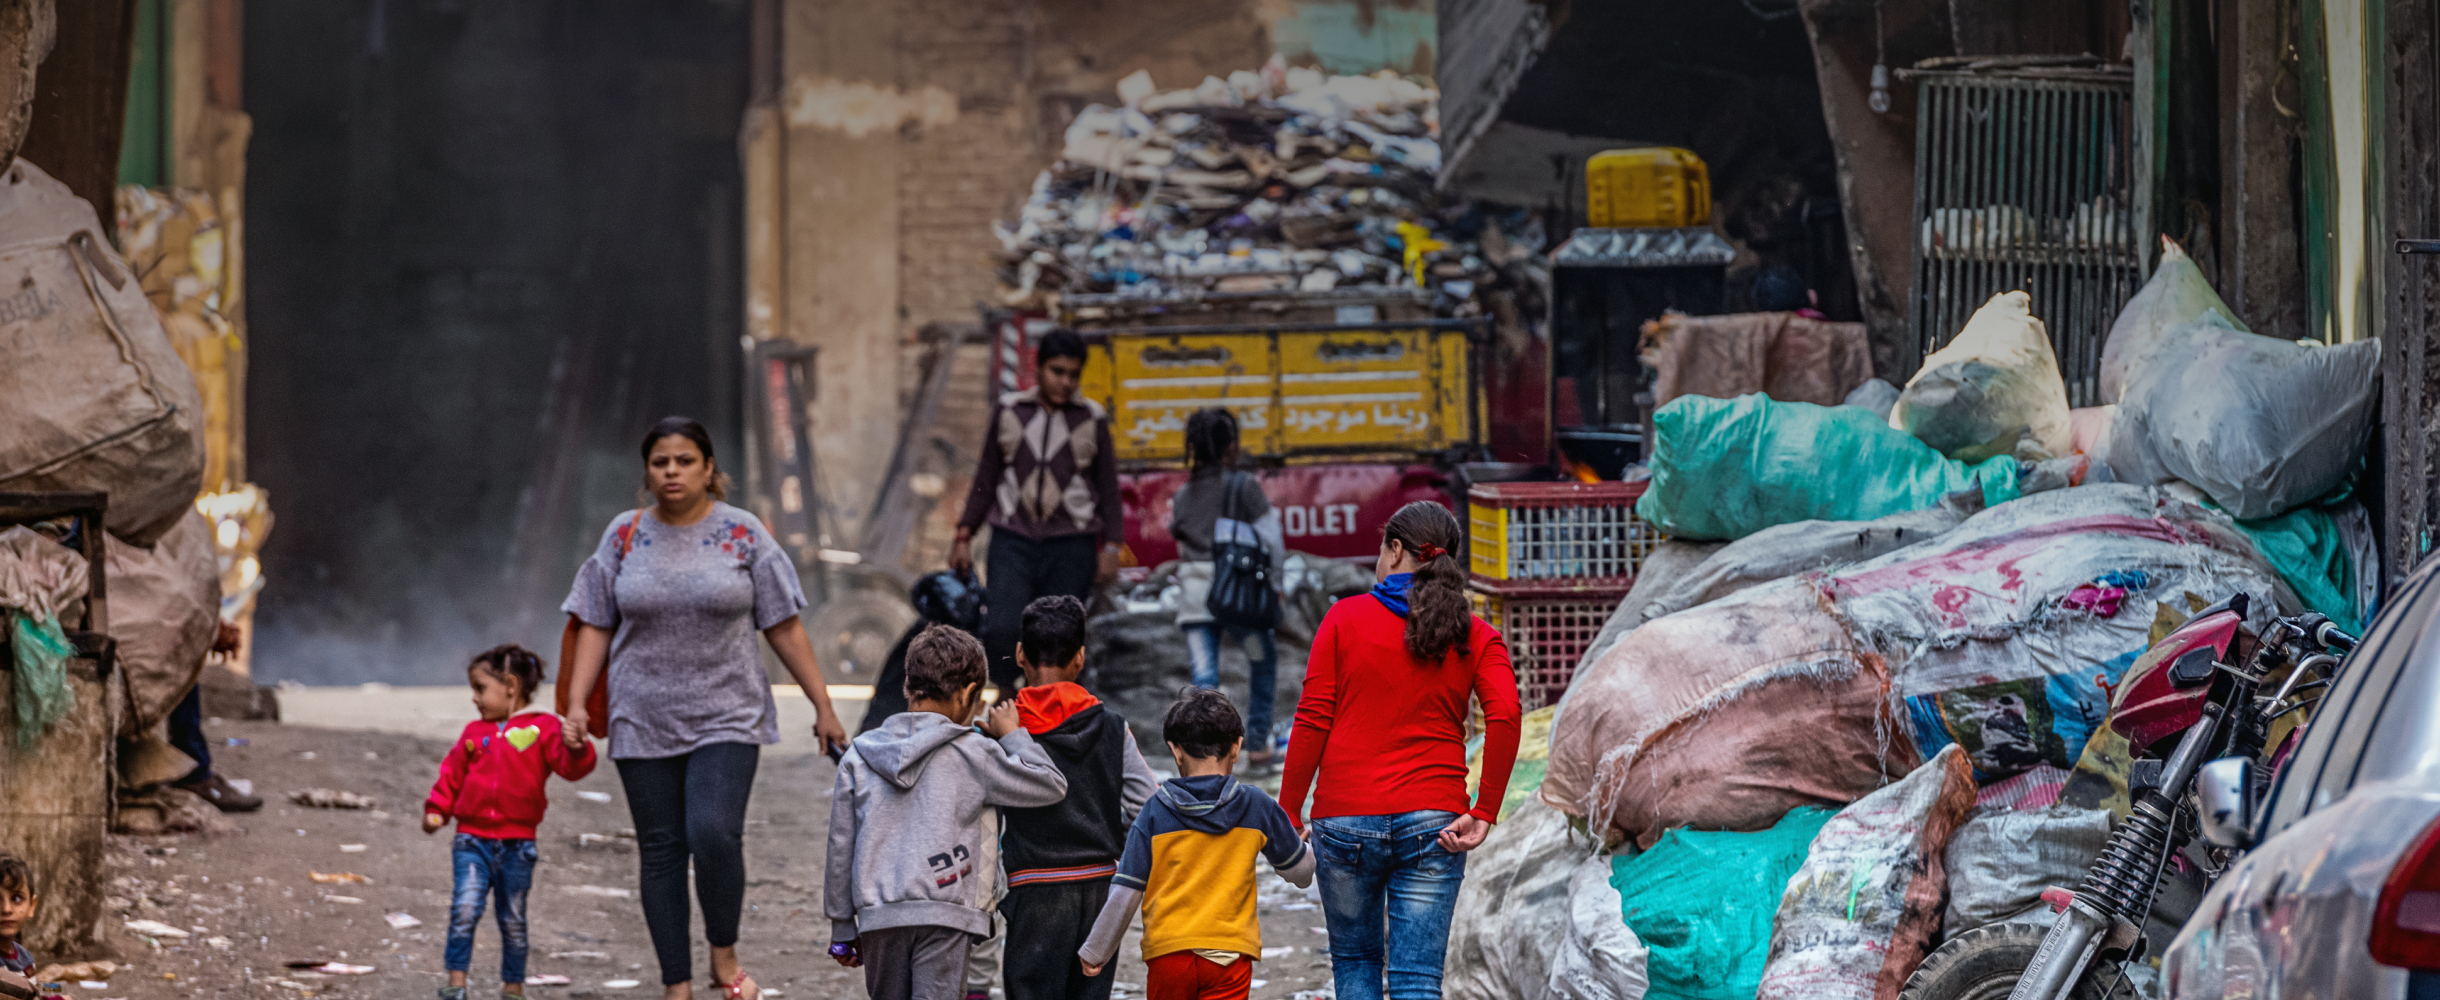 Как я побывал в Городе мусорщиков в Каире